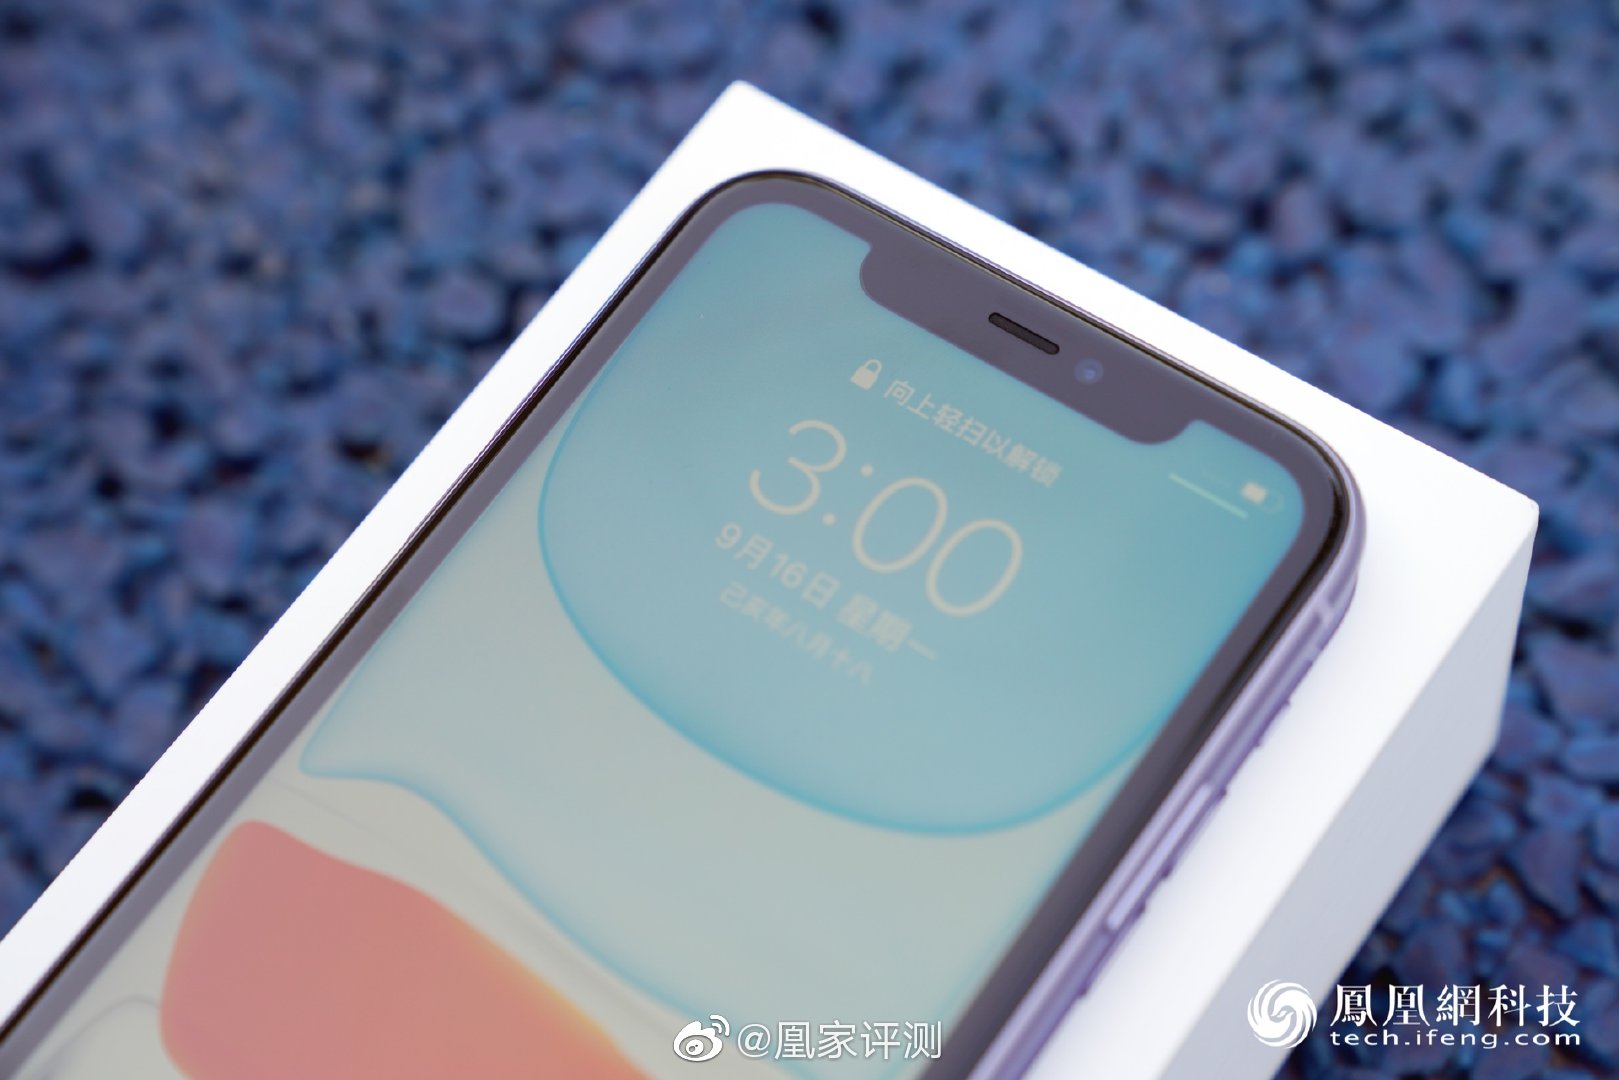 iphone11刘海全面屏依旧后置双摄颜色更时尚zt